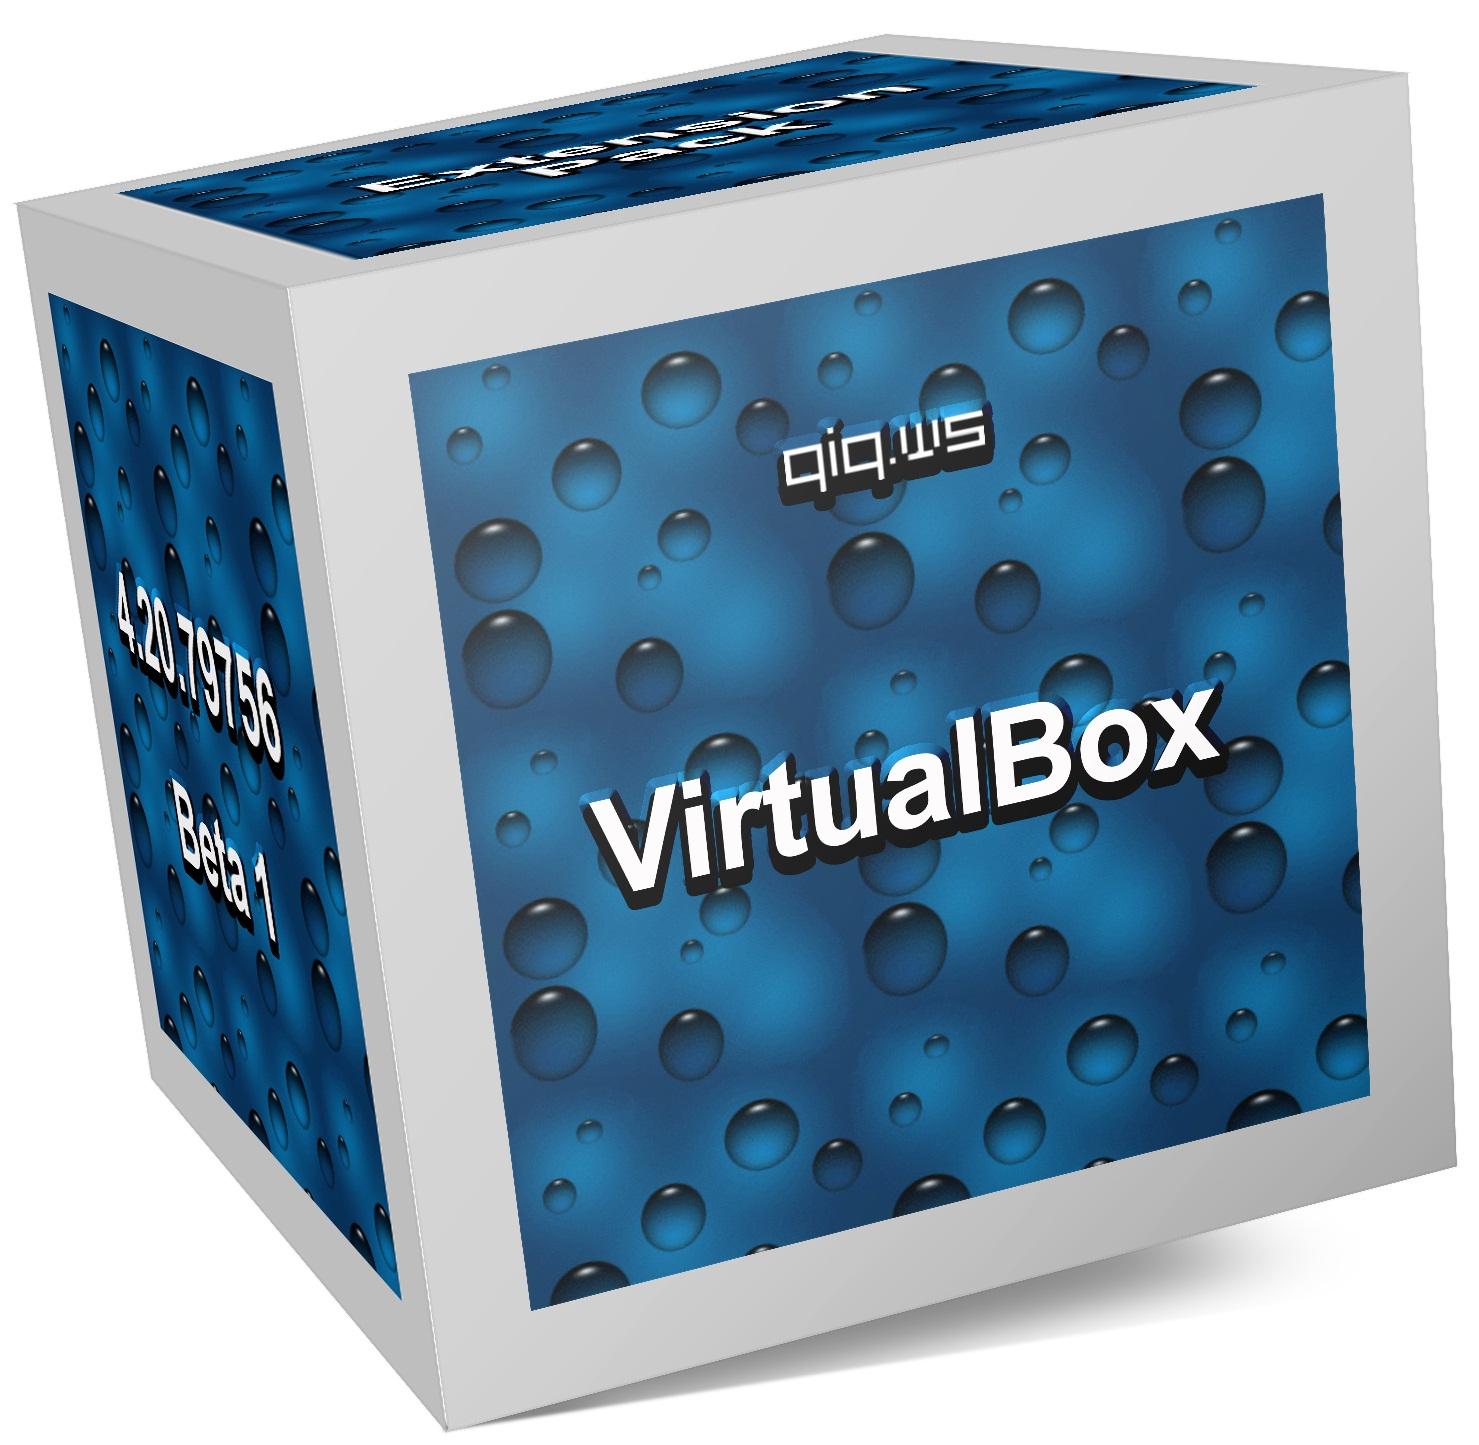 virtualbox 64 bit more than 1 core